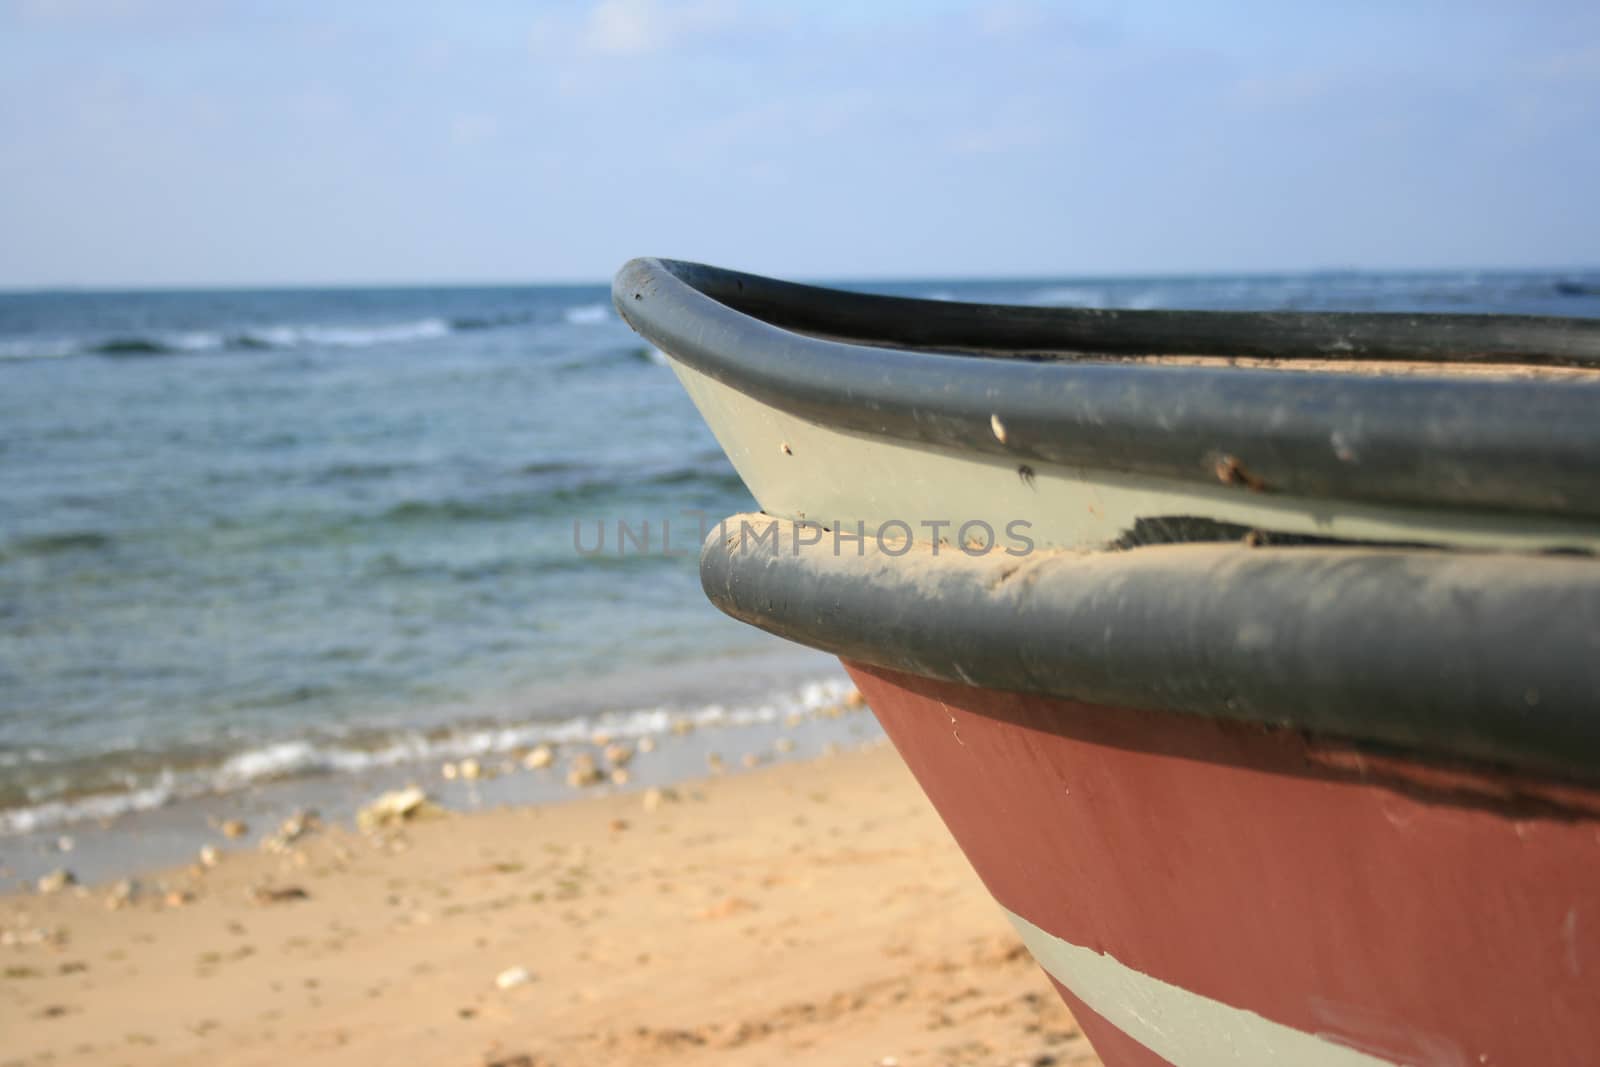 boat on a sandy beach